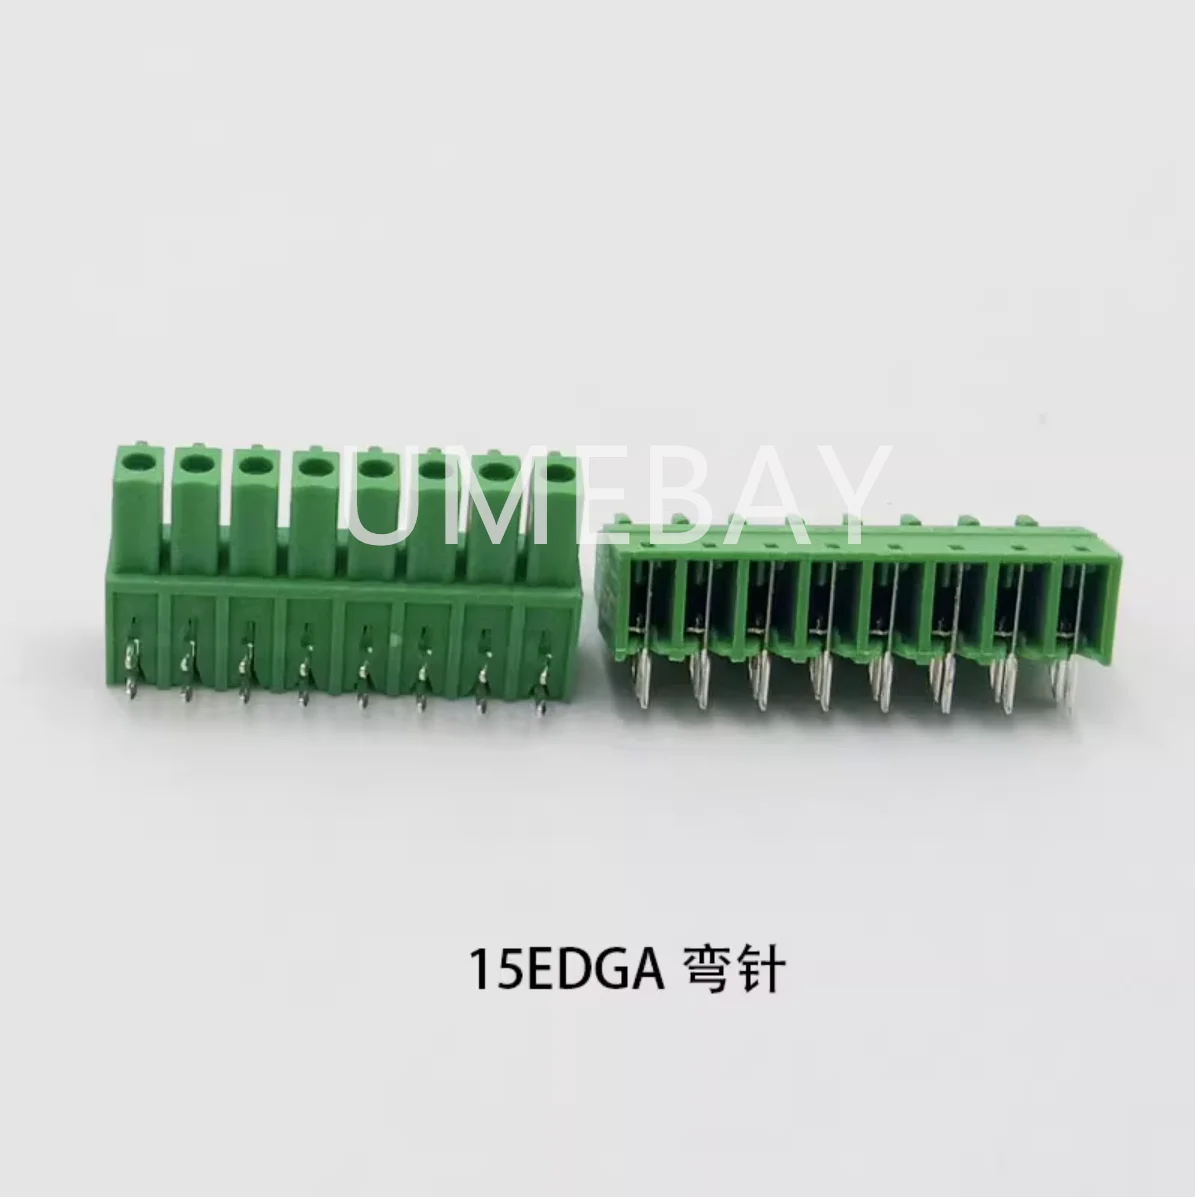 5TK 15EDGA KF2EDGA/KF2EDGB maksumuses 3,81 mm plug-in PCB vooluühendus 9P10P11P12P13P14P15P16P painutatud pin-koodi - 1